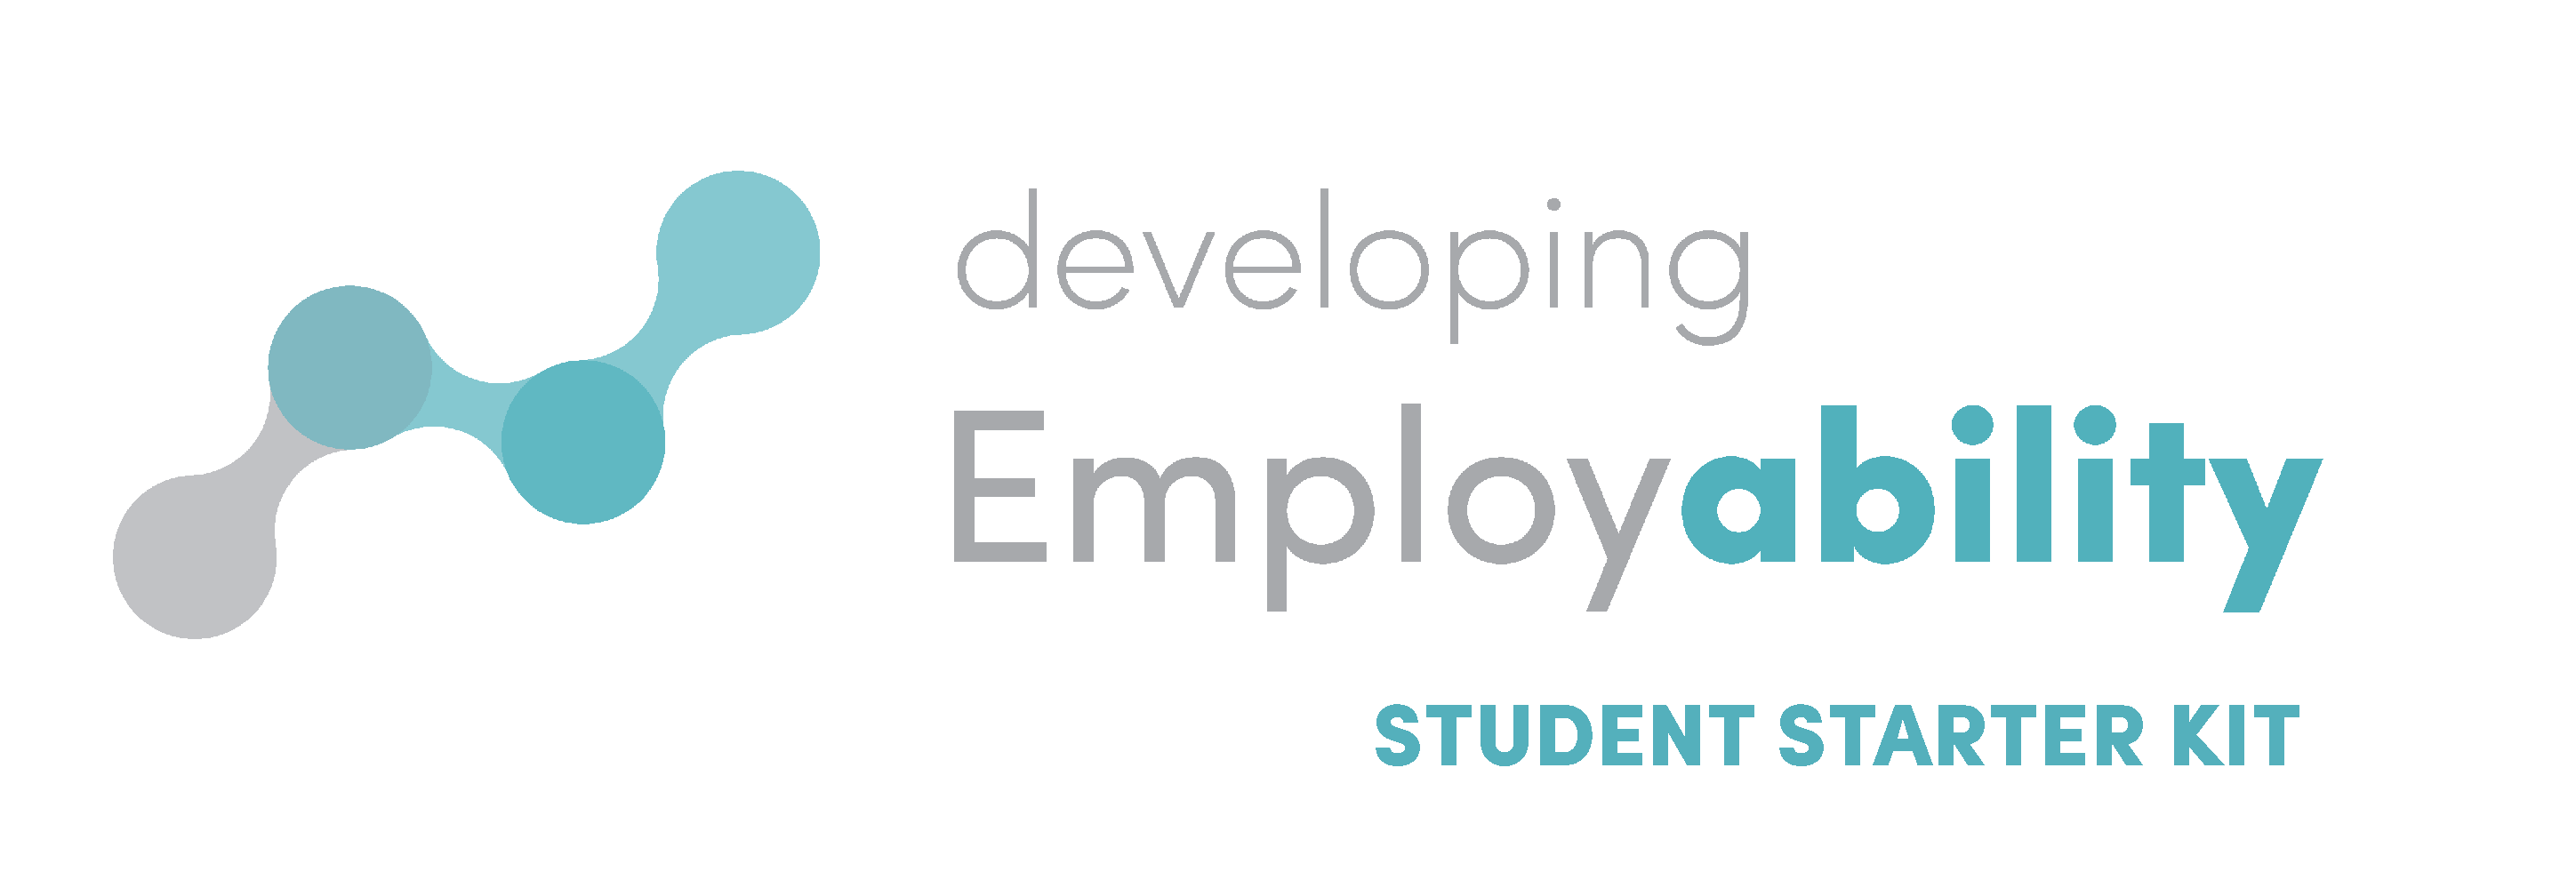 developing employability logo